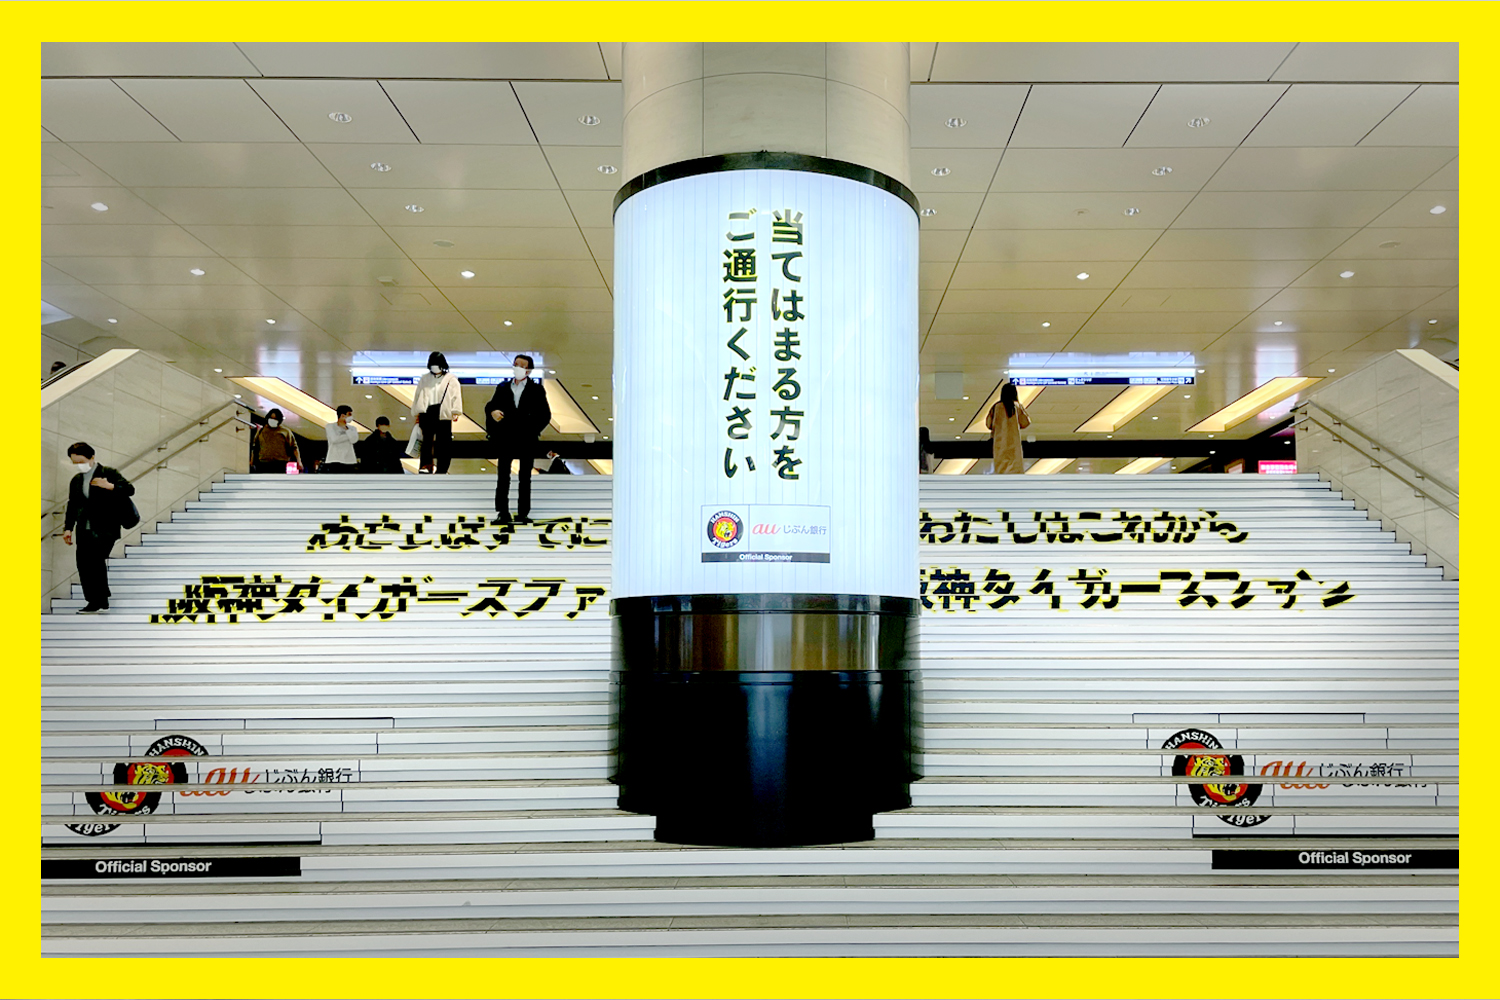 阪神タイガース協賛企画「究極の二択階段広告」 - 株式会社ADK 